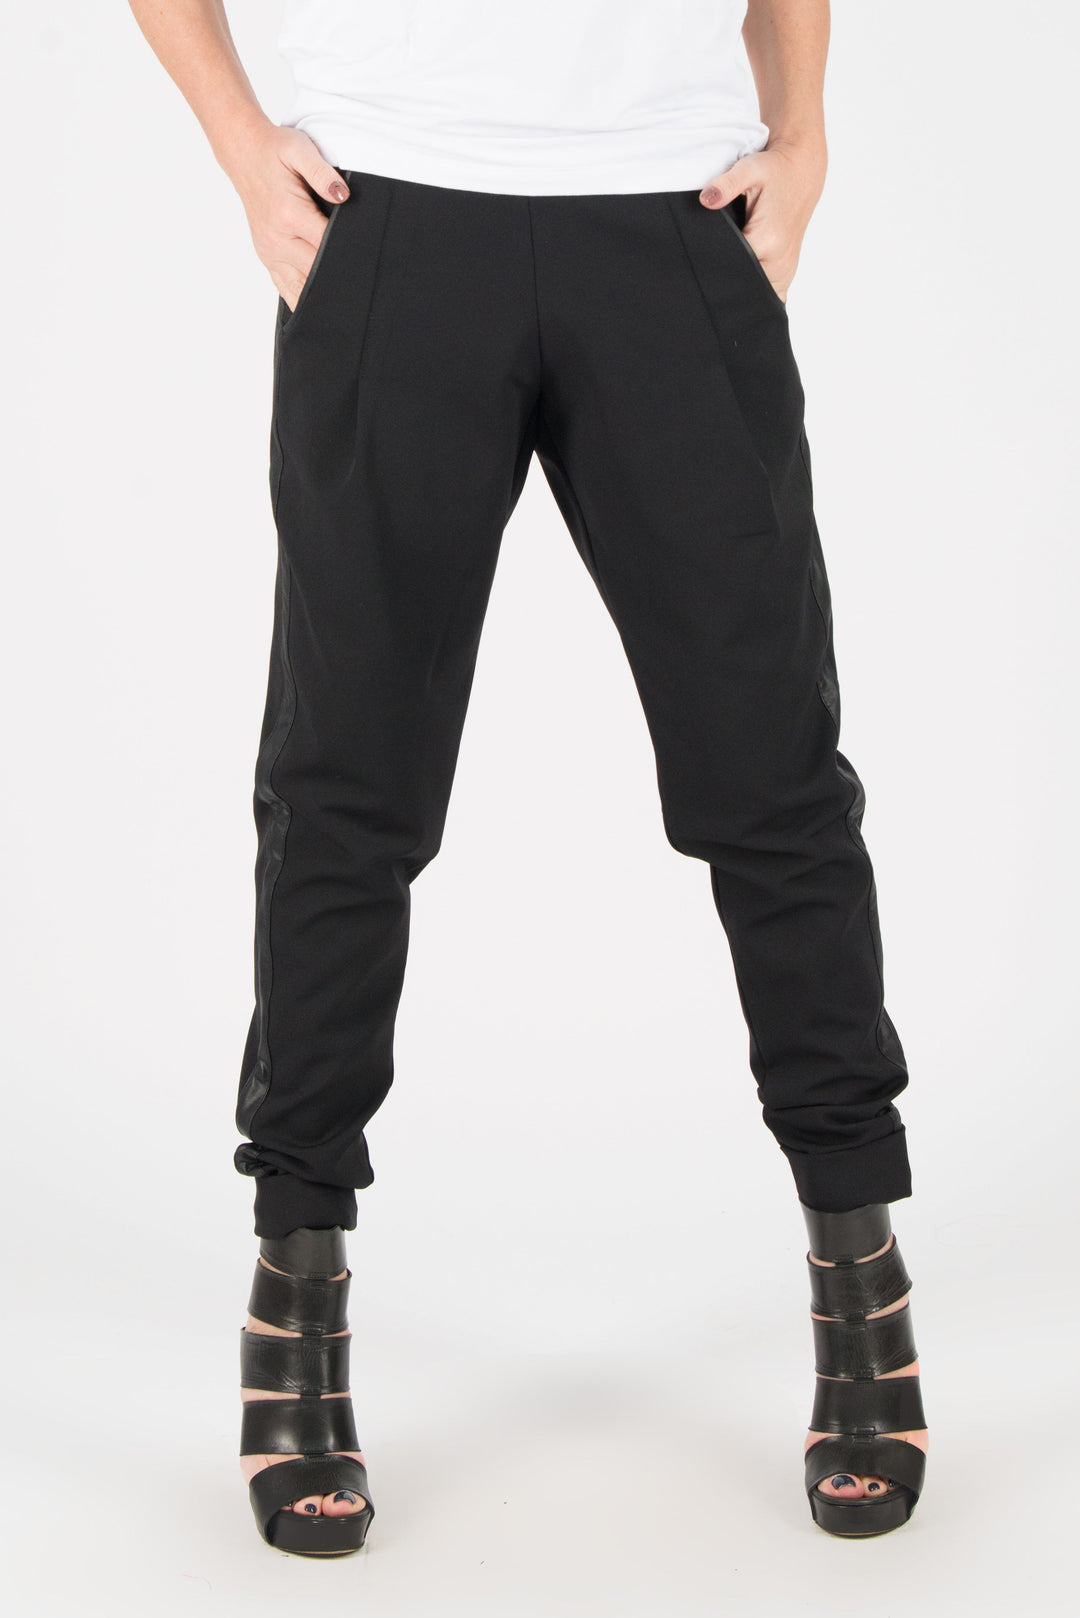 Black Cotton Tight Pants, Black Elegant leggings, New Arrival